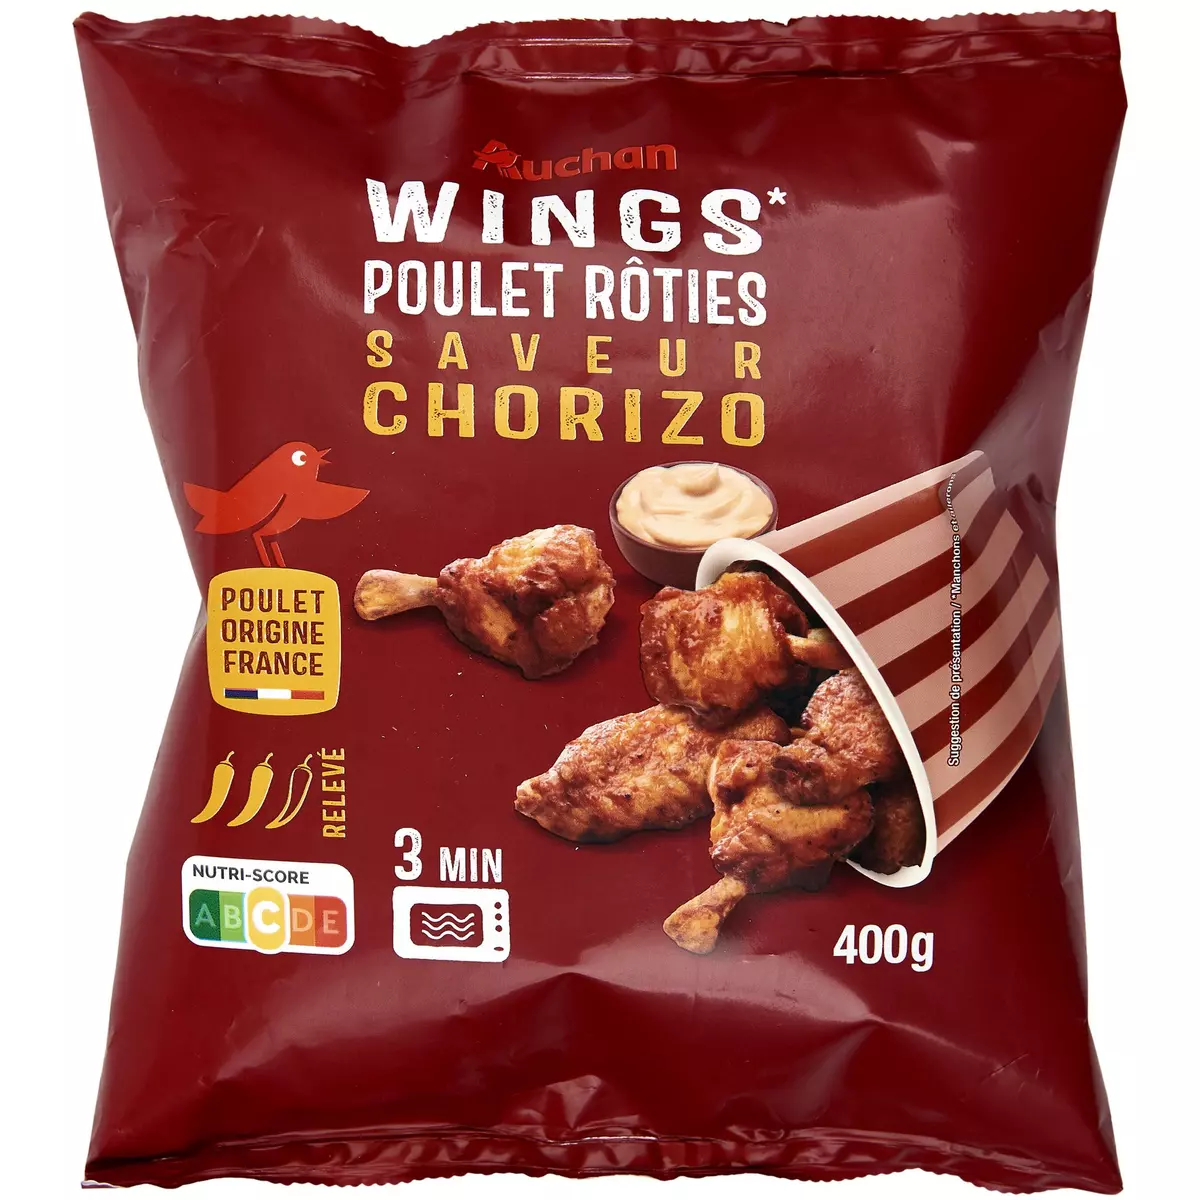 AUCHAN Wings de poulet rôties saveur chorizo 400g